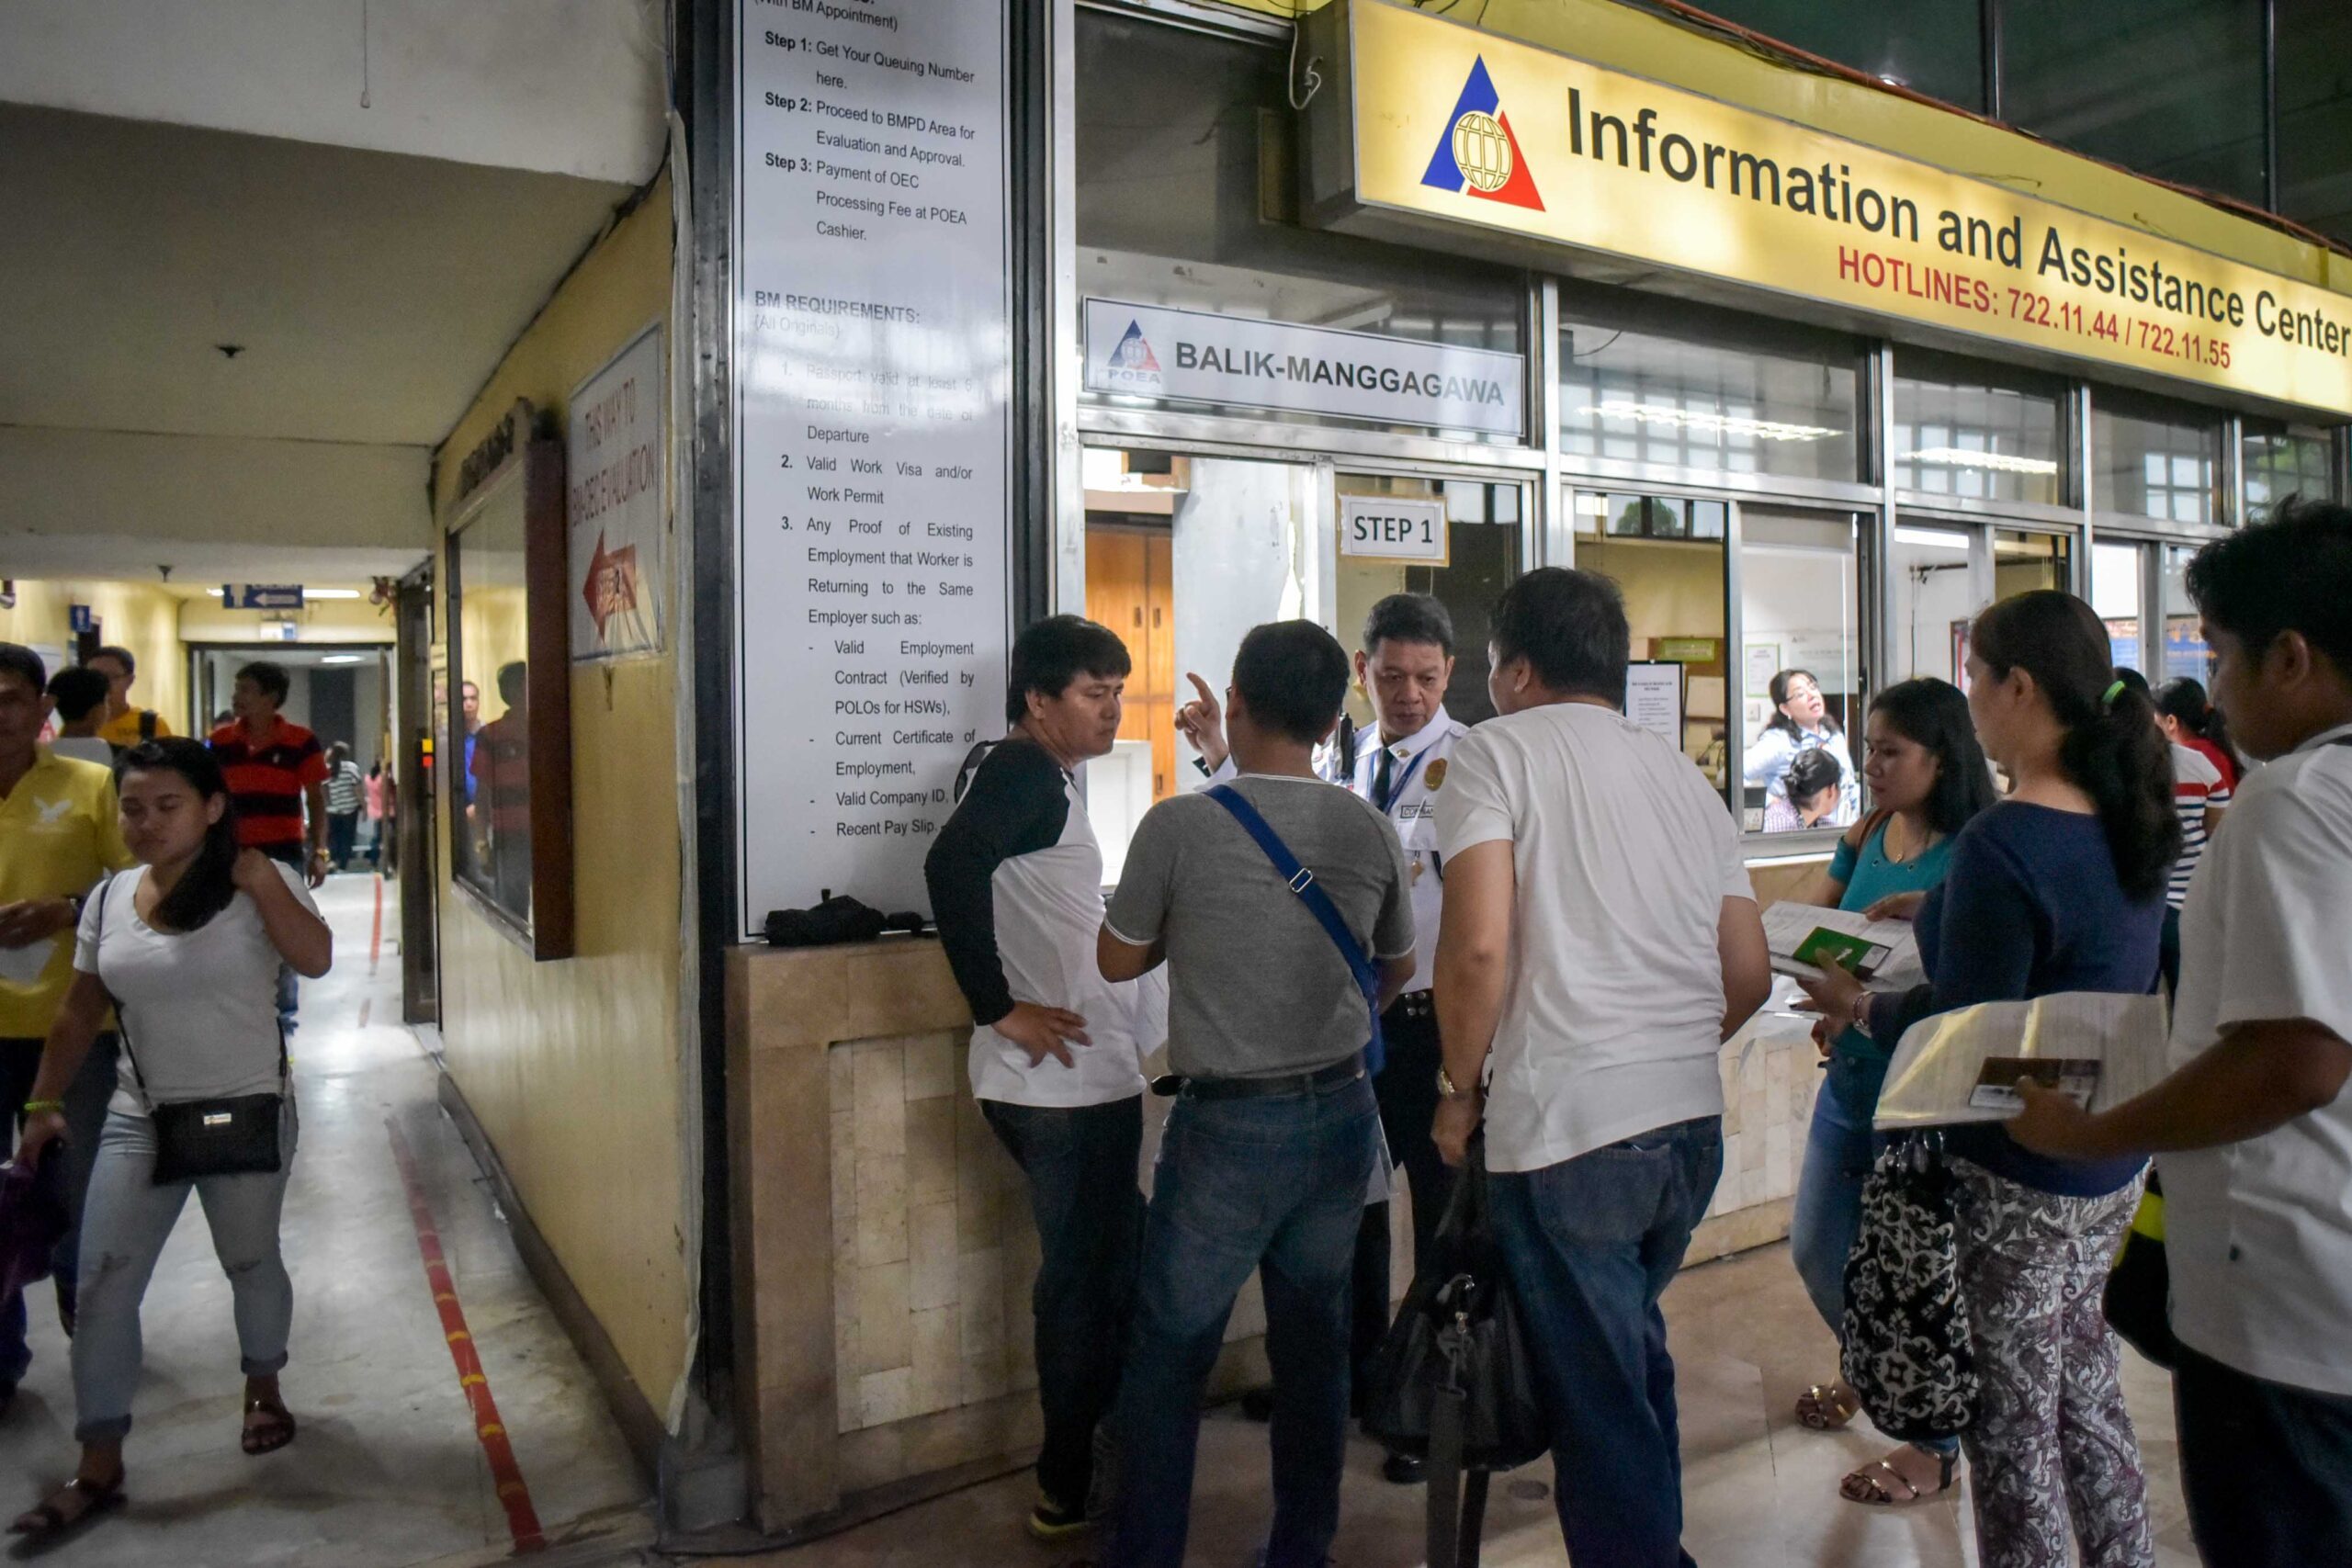 Gov’t frontline services in Metro Manila to continue despite lockdown